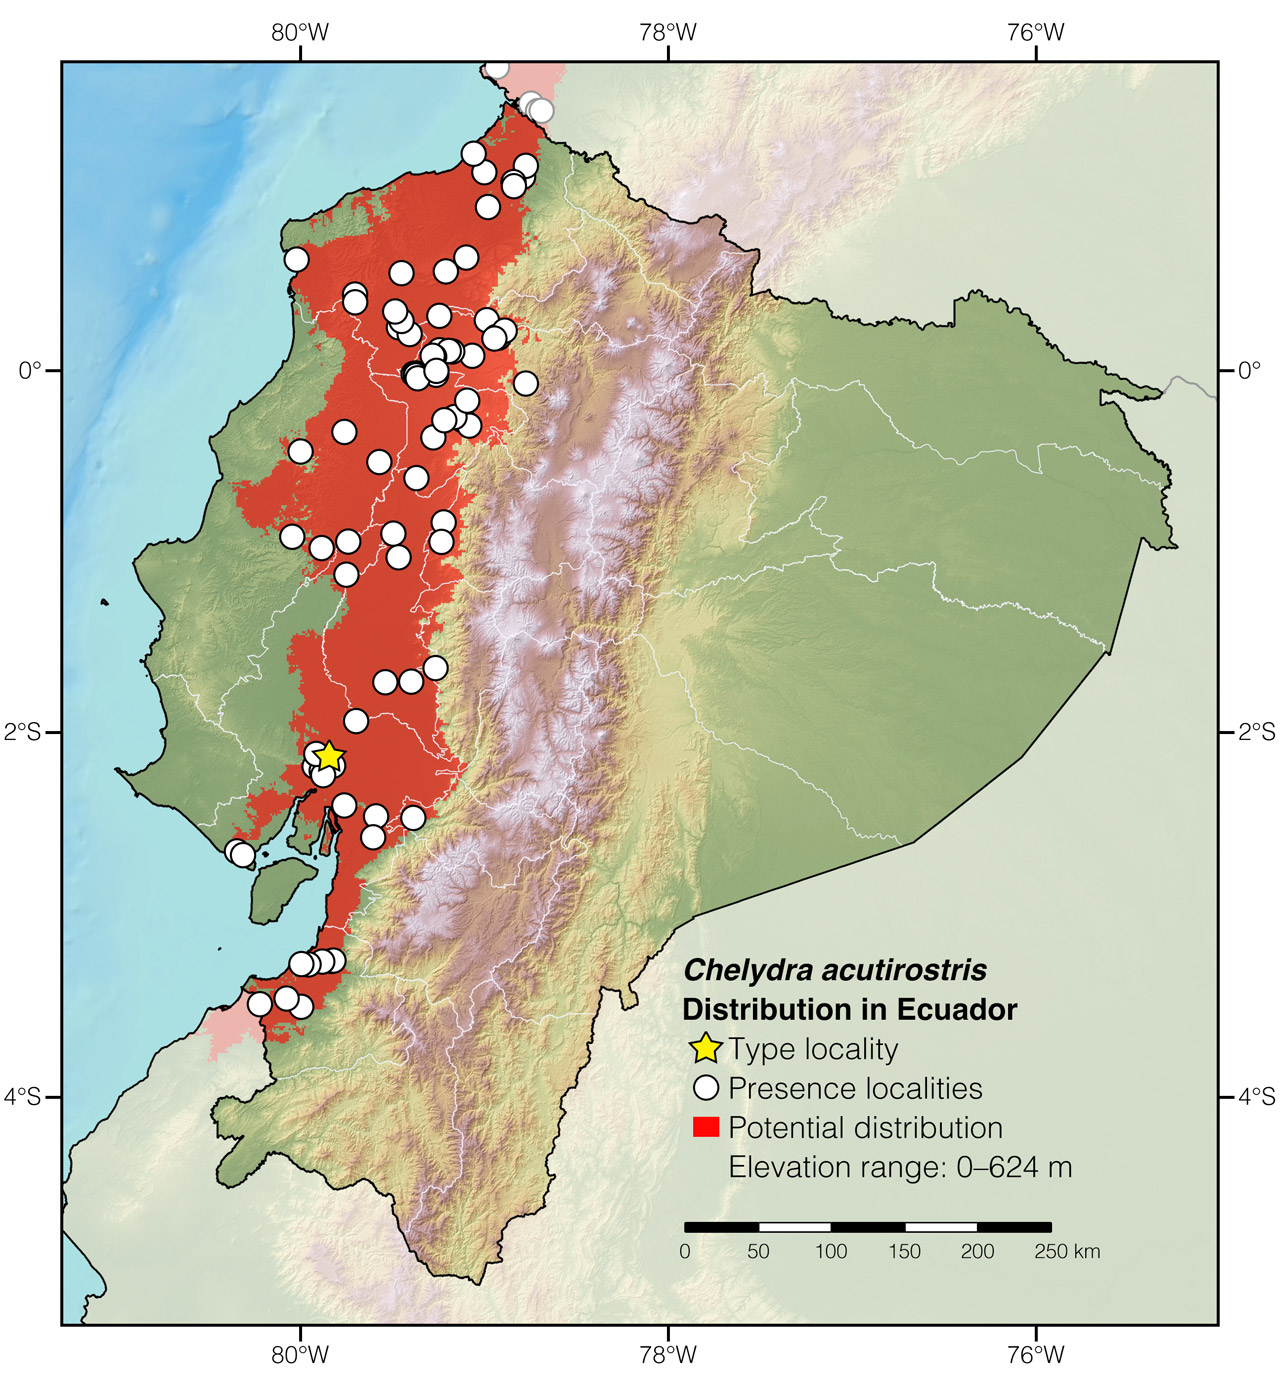 Distribution of Chelydra acutirostris in Ecuador